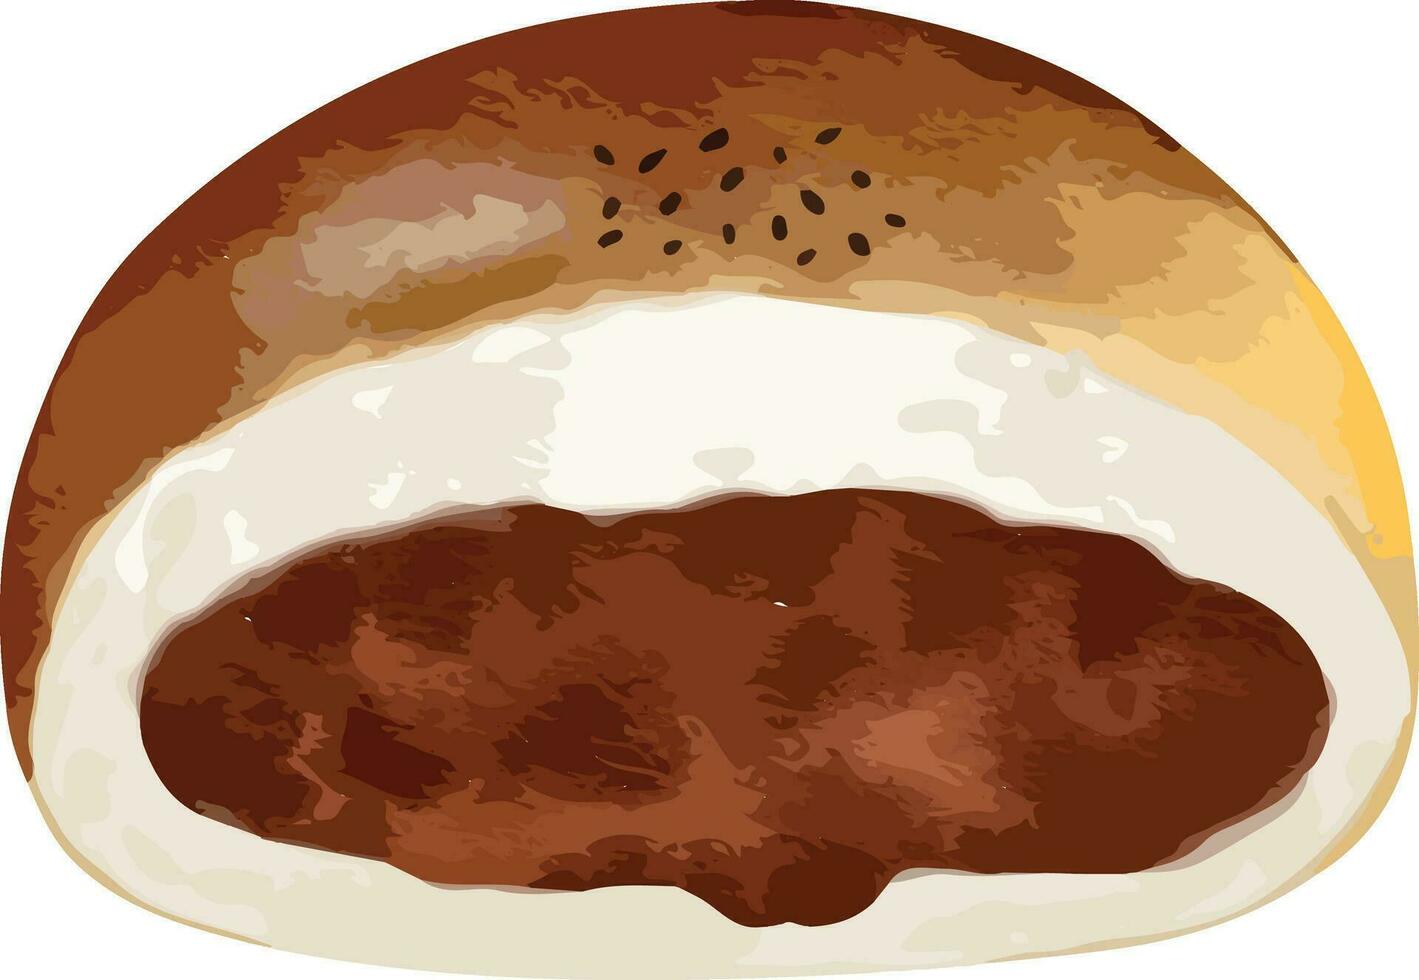 vermelho feijão pão mão desenhado aguarela ilustração isolado elemento vetor